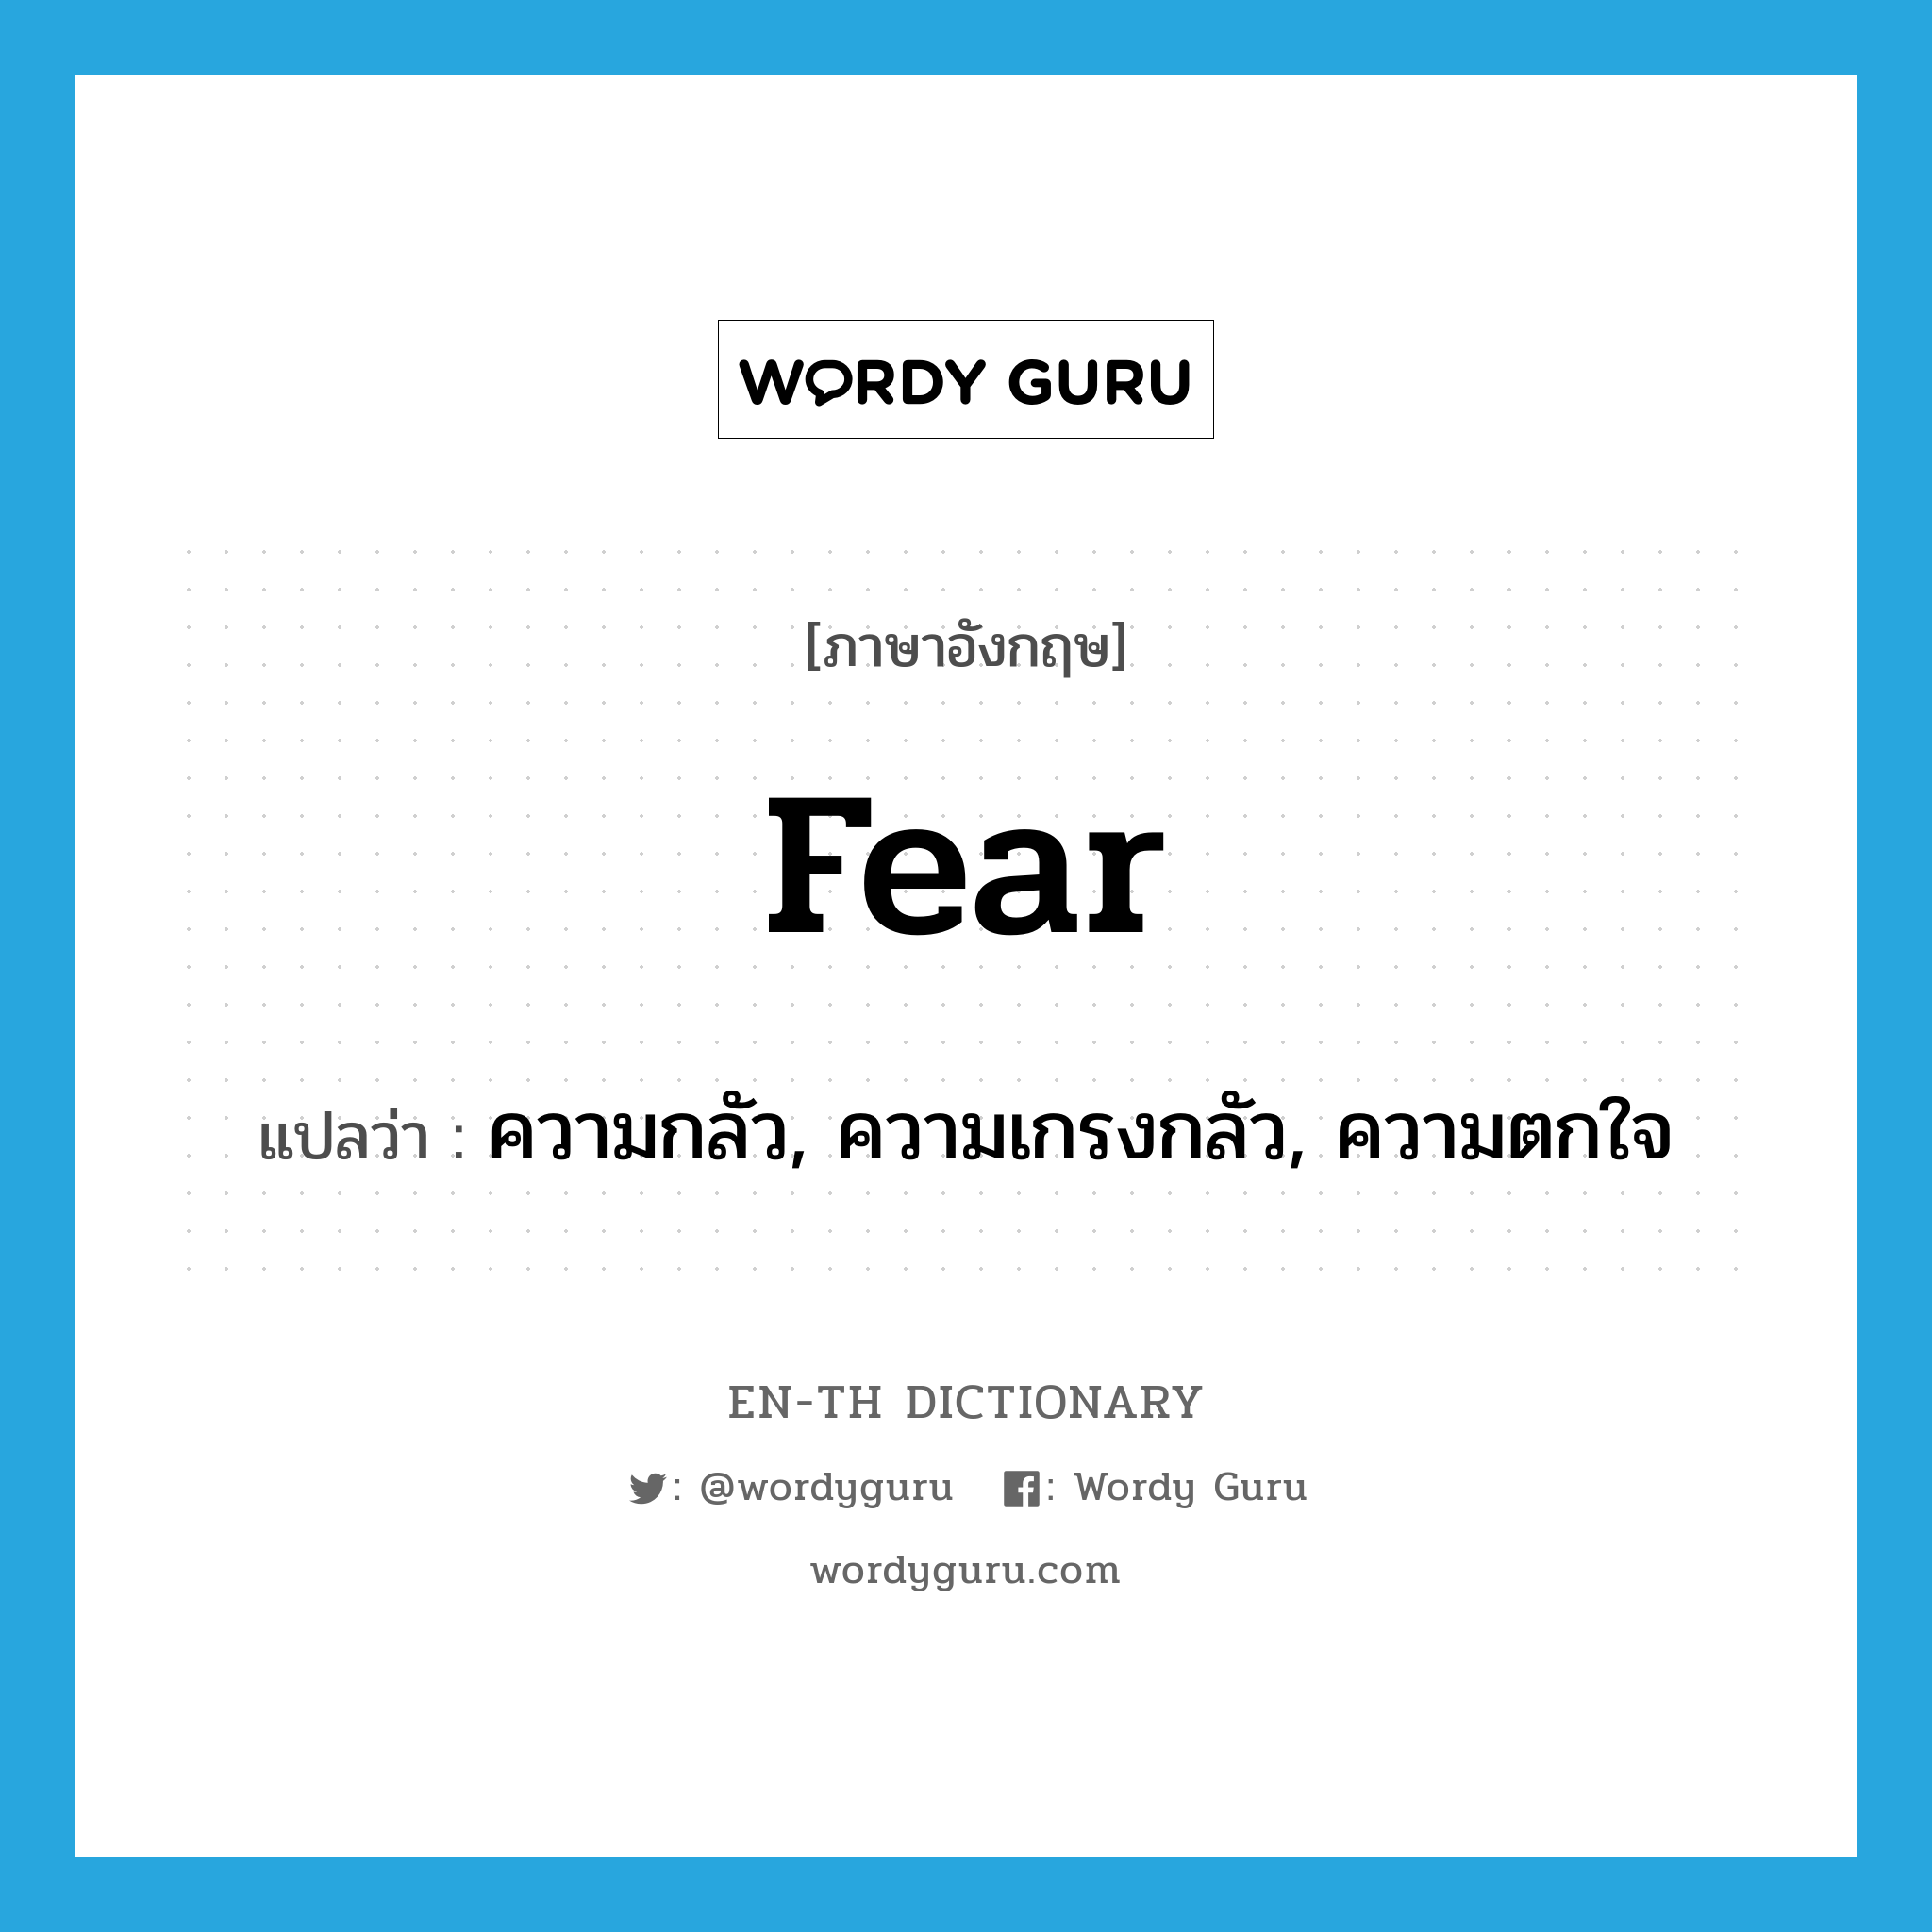 ความกลัว, ความเกรงกลัว, ความตกใจ ภาษาอังกฤษ?, คำศัพท์ภาษาอังกฤษ ความกลัว, ความเกรงกลัว, ความตกใจ แปลว่า fear ประเภท N หมวด N